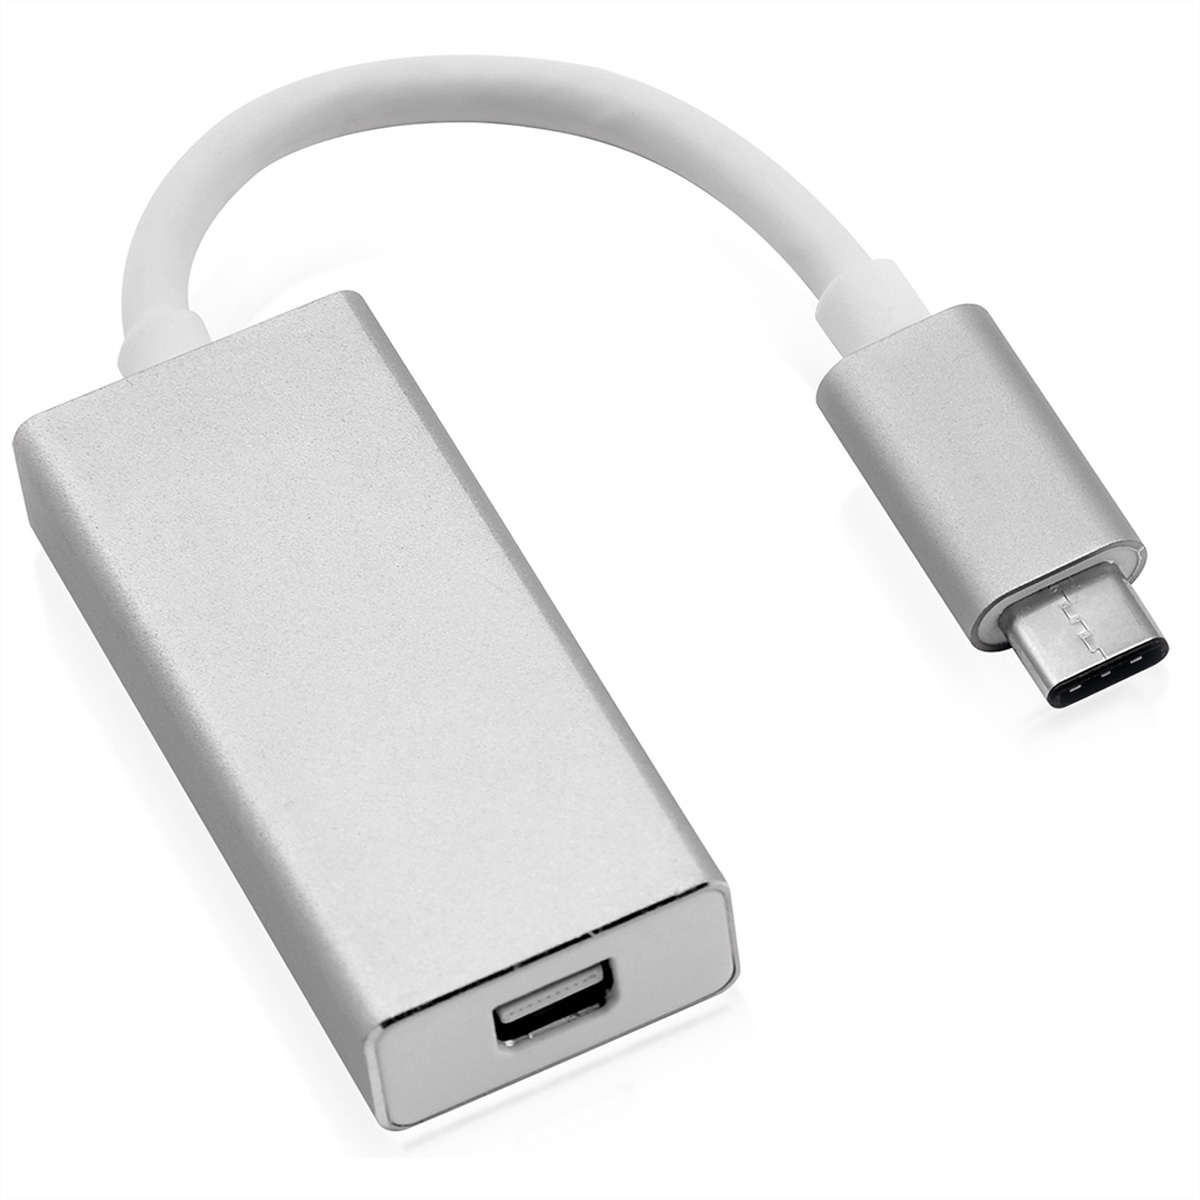 ROLINE Display Adapter, USB-DisplayPort silberfarben C USB Typ v1.2, Mini-DisplayPort Adapter - ST/BU